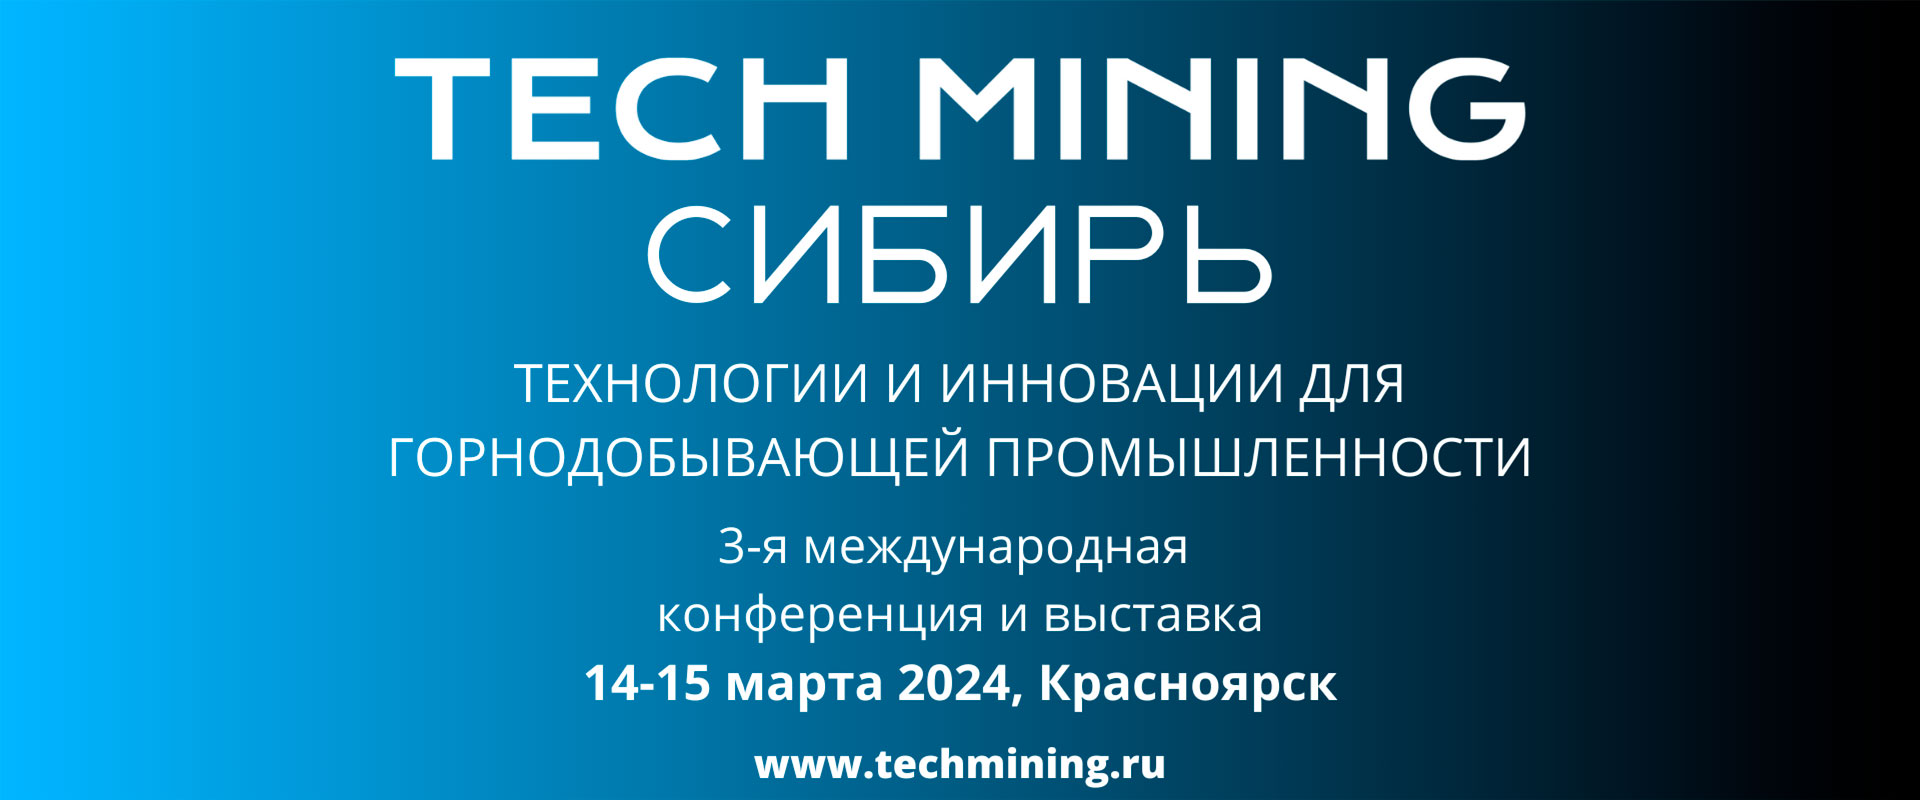 Конференция и выставка Tech Mining Сибирь 2024